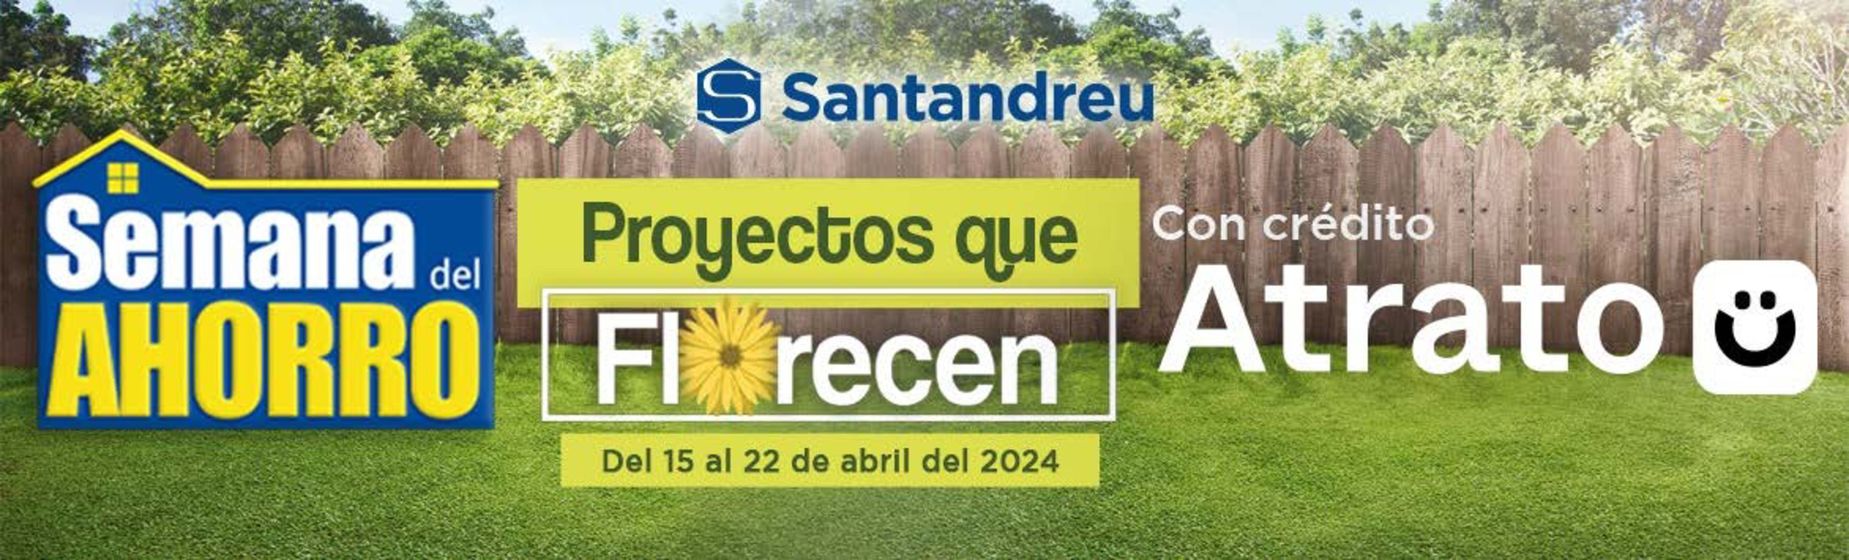 Catálogo Santandreu | Semana del ahorro | 18/4/2024 - 22/4/2024